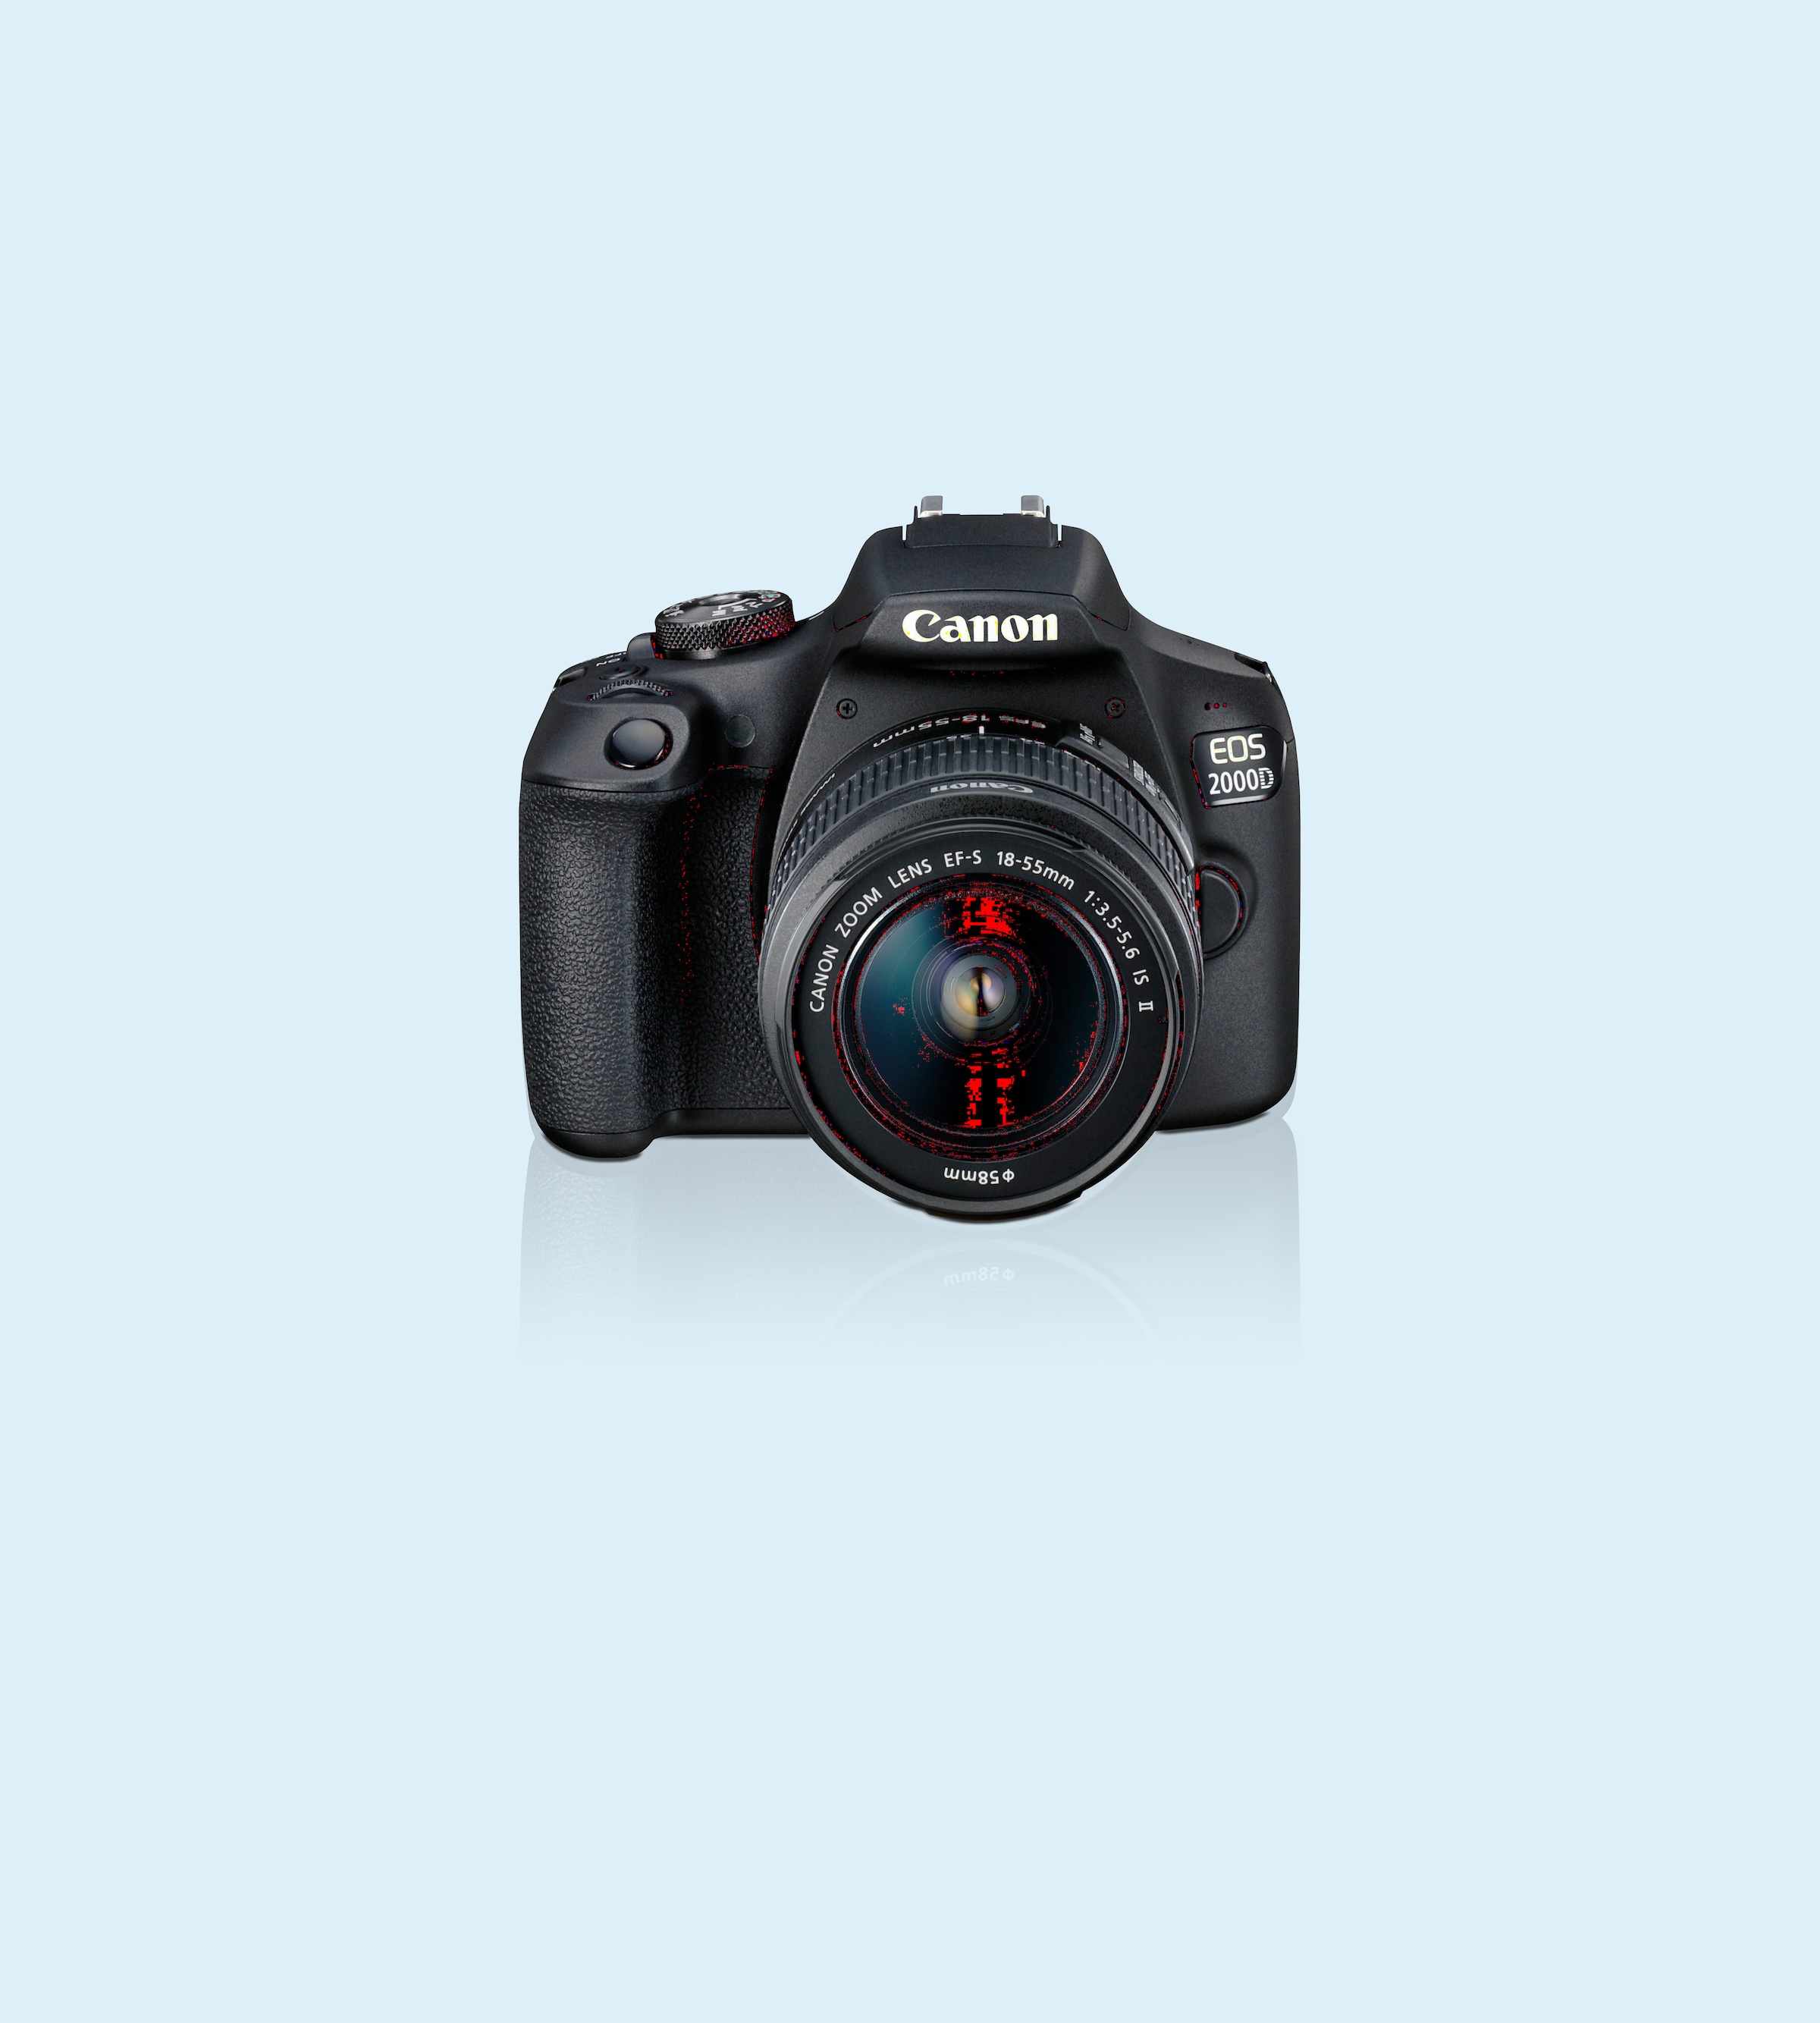 24,1 Canon II, IS 18-55 bei IS (Wi-Fi), Spiegelreflexkamera »EOS NFC- 18-55 MP, WLAN EF-S Kit«, Objektiv inkl. II 2000D EF-S